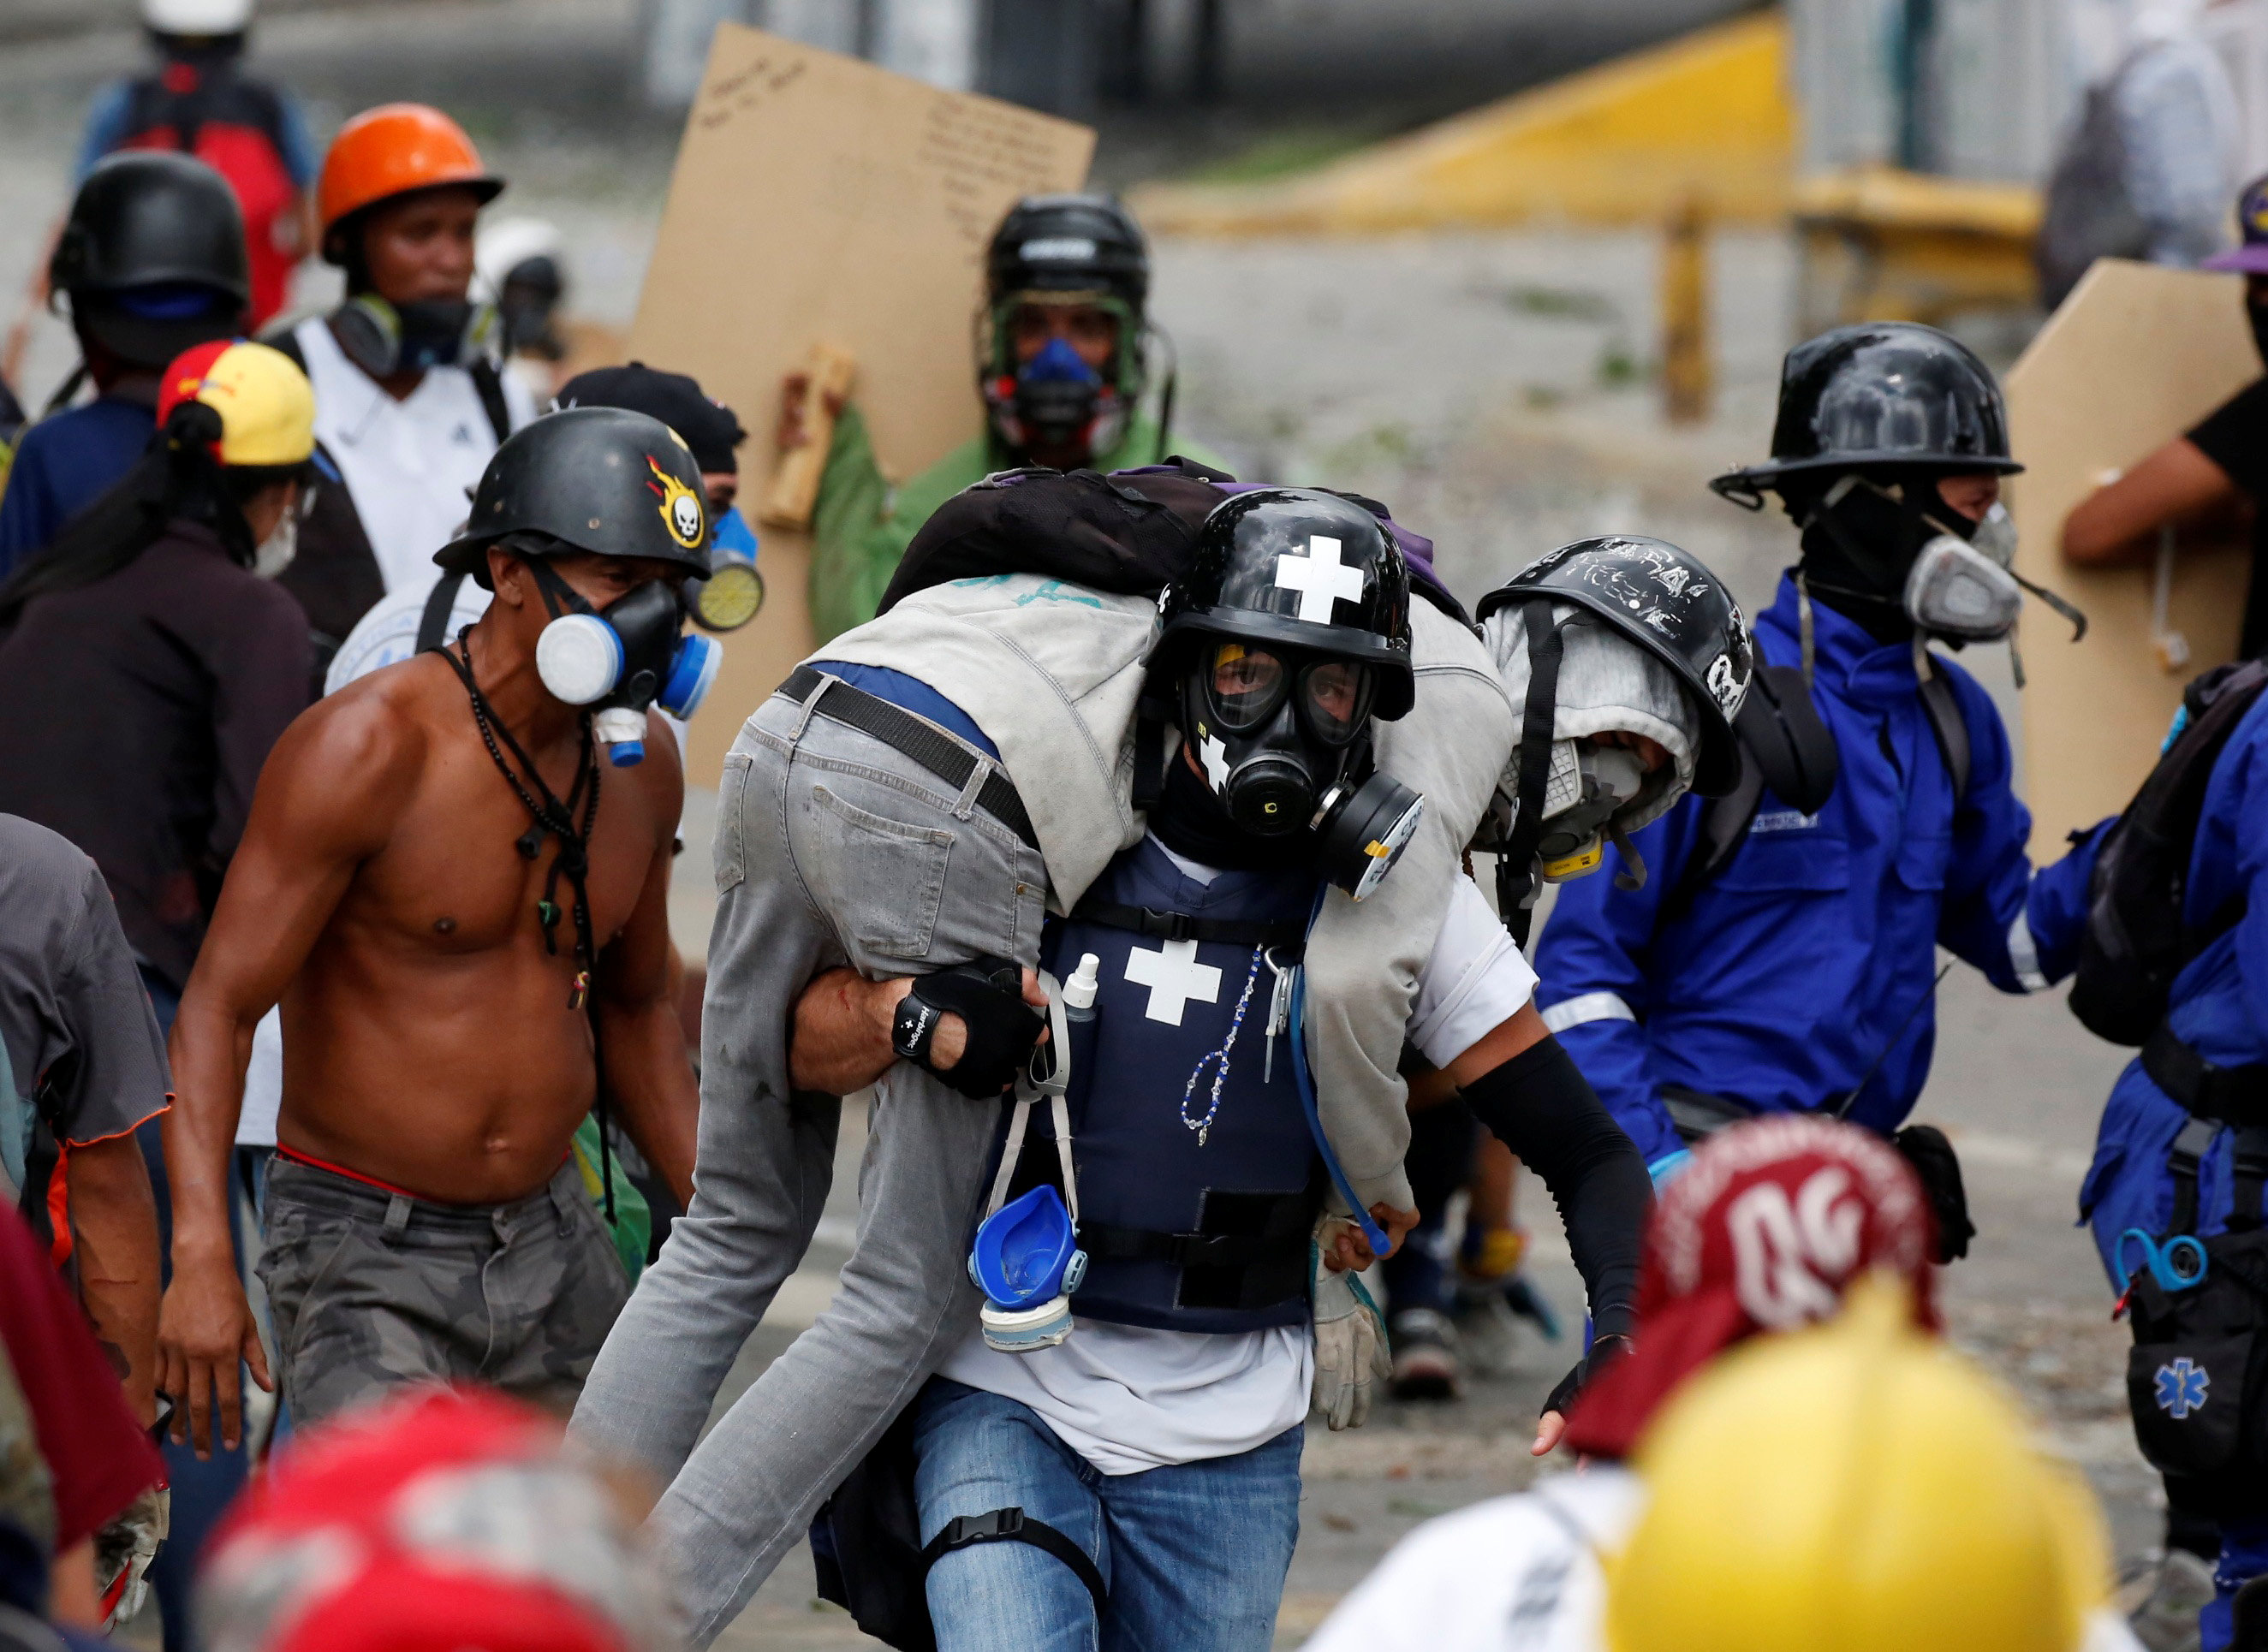 Al menos 17 heridos producto de la brutal represión han sido ingresados en Salud Chacao